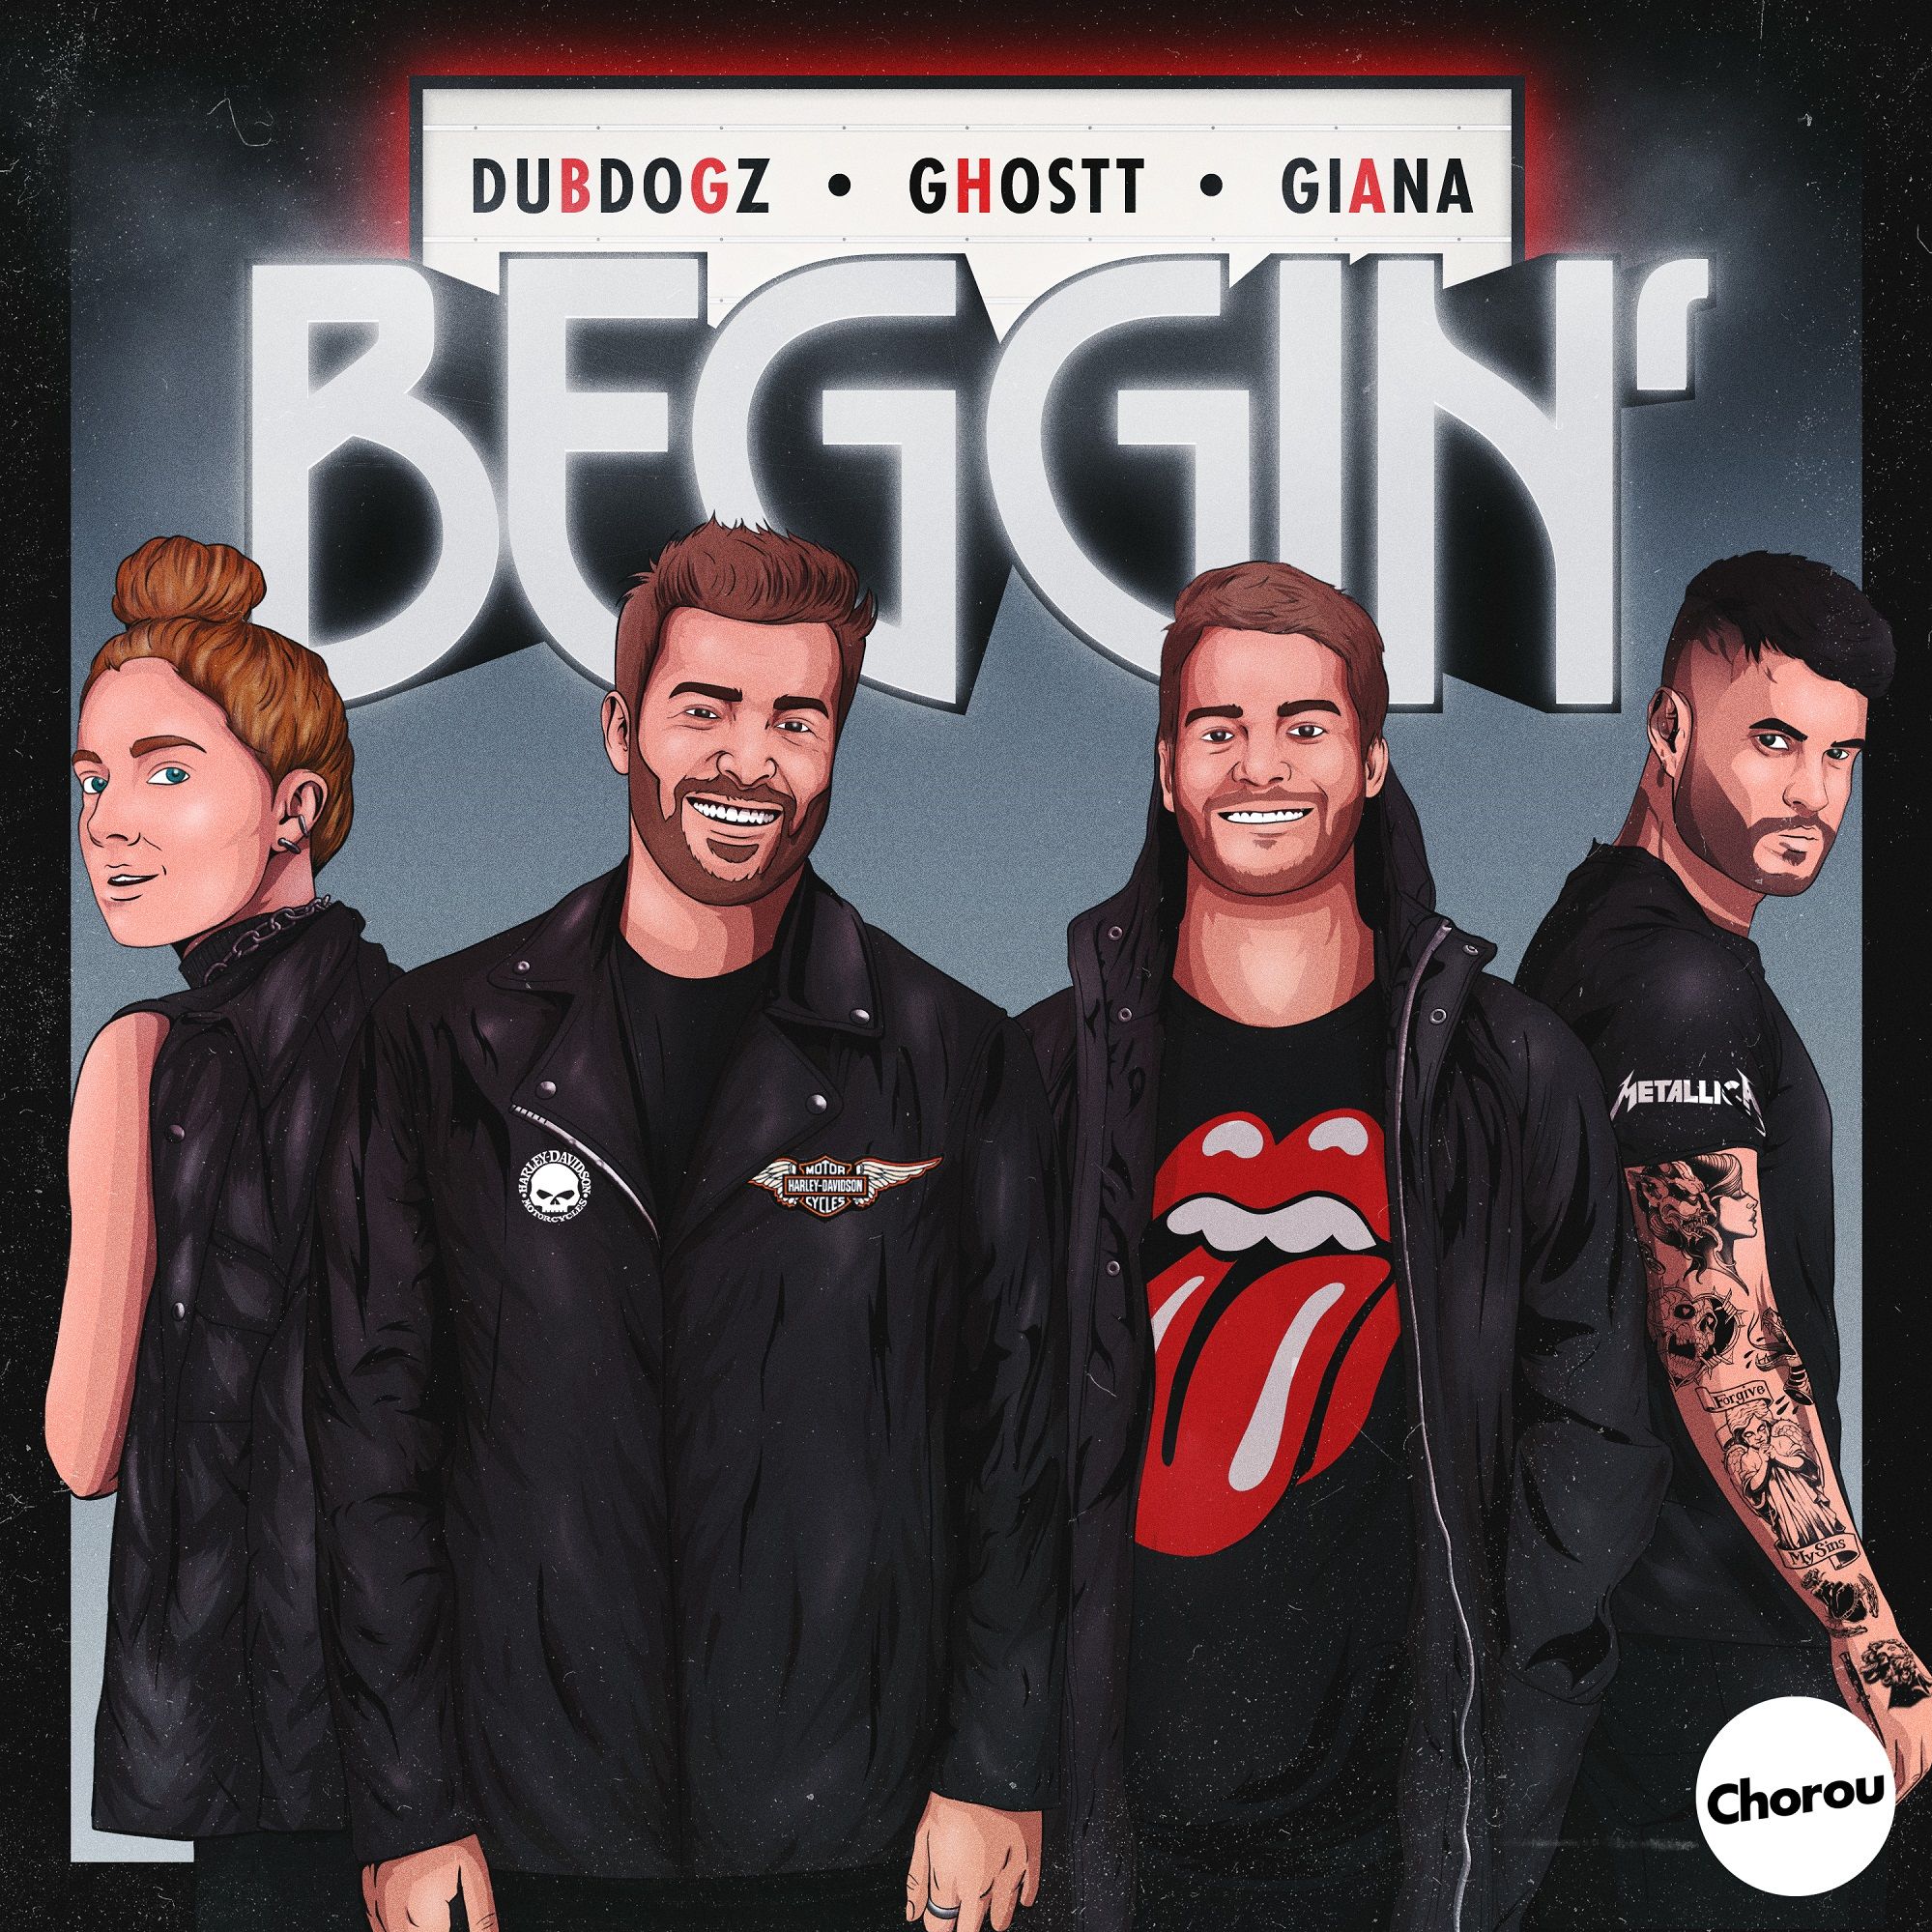 பதிவிறக்க Tamil Dubdogz, Ghostt - Beggin' (feat. Giana) [Chorou Records]